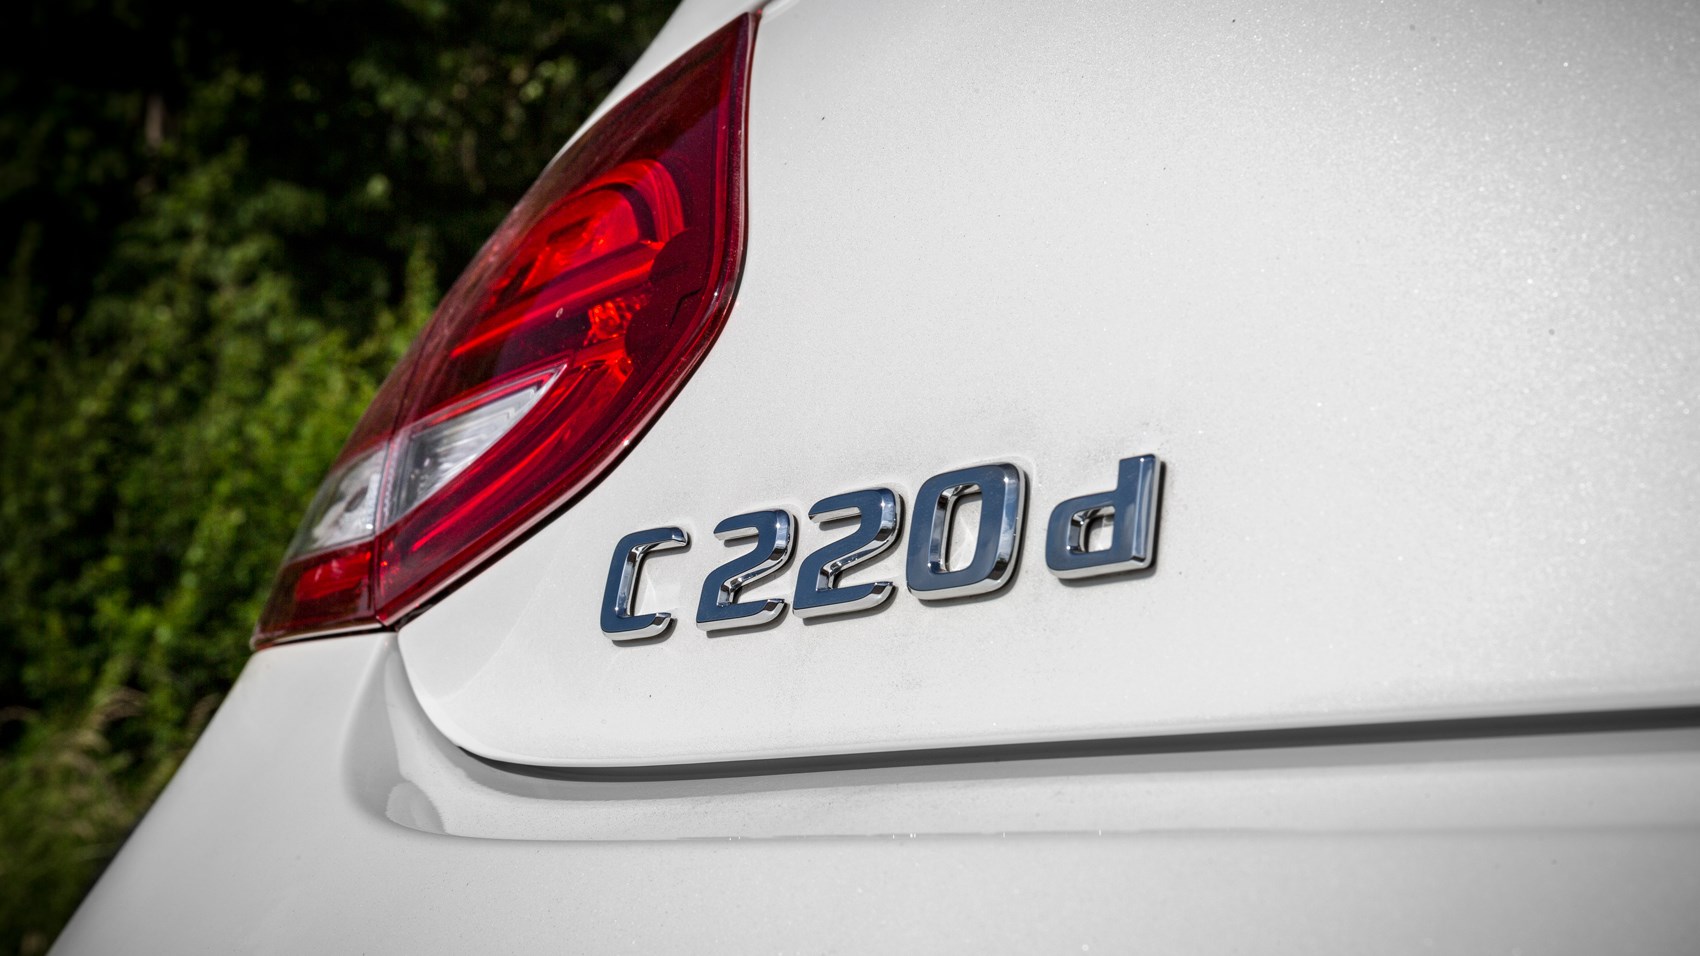 Mercedes C220d Cabrio badge